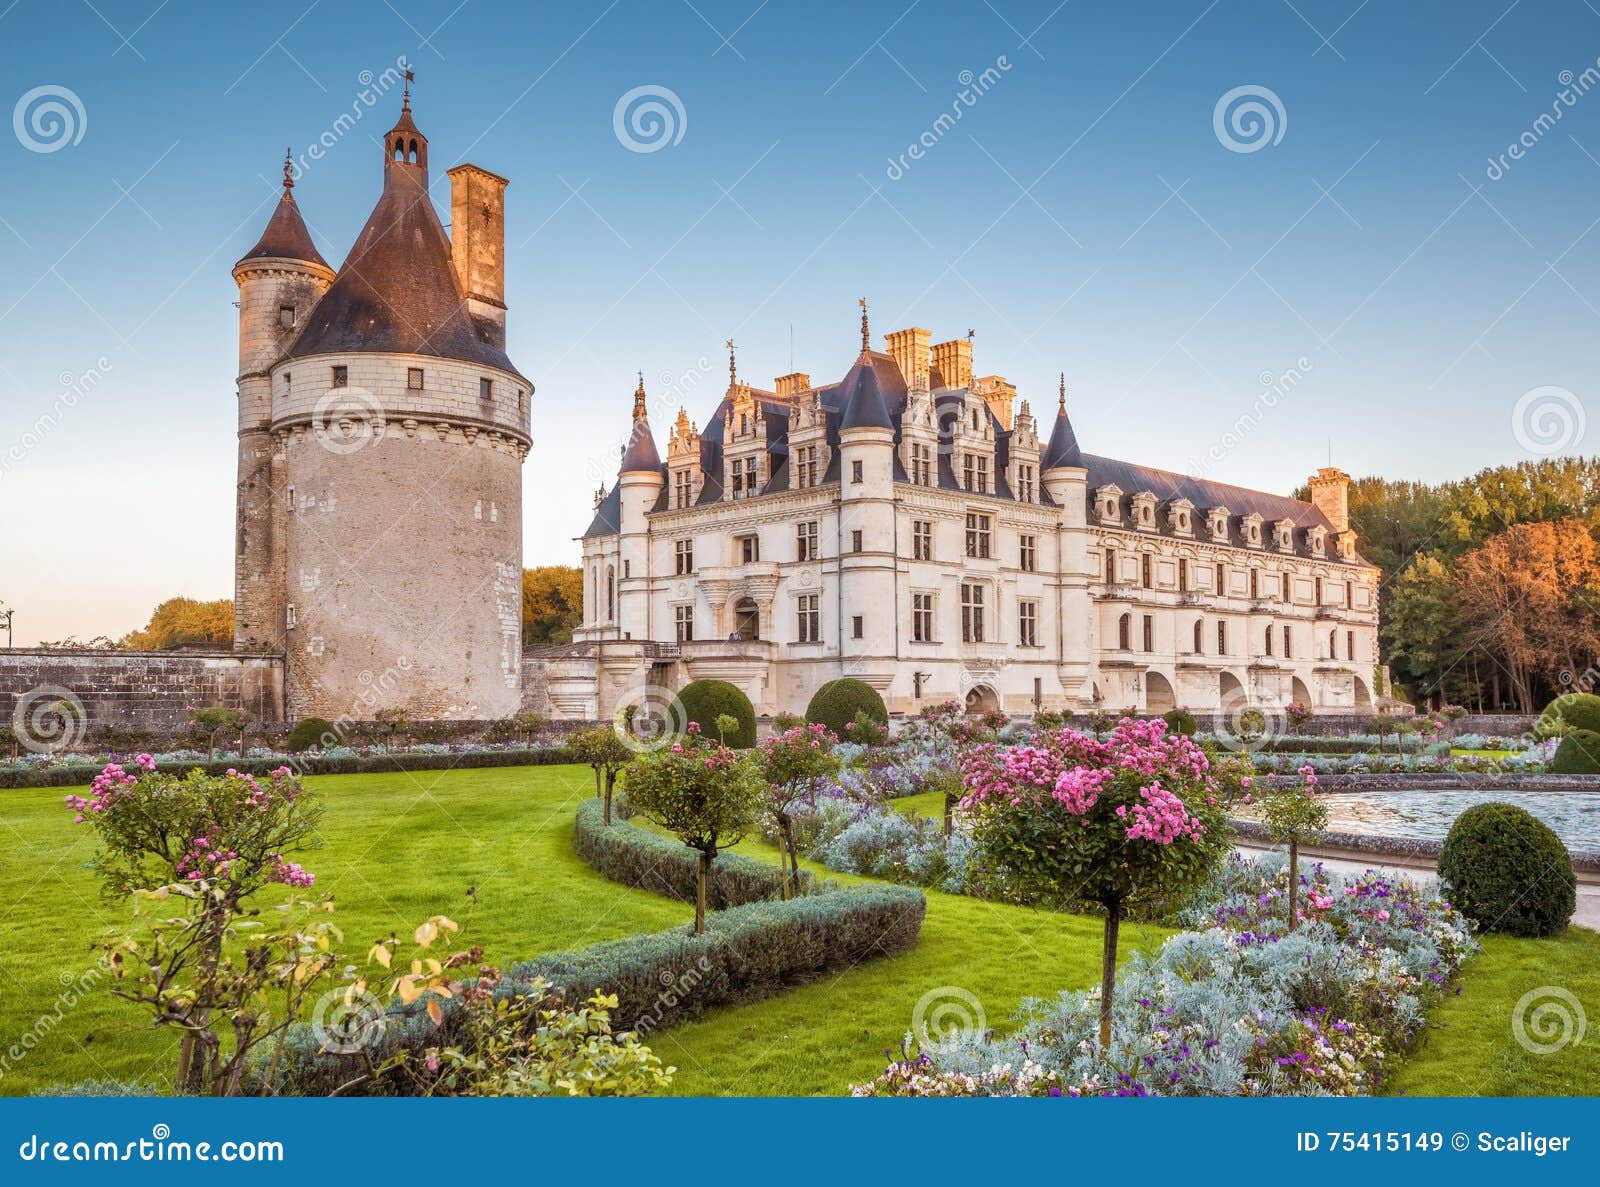 chateau (castle) de chenonceau, france